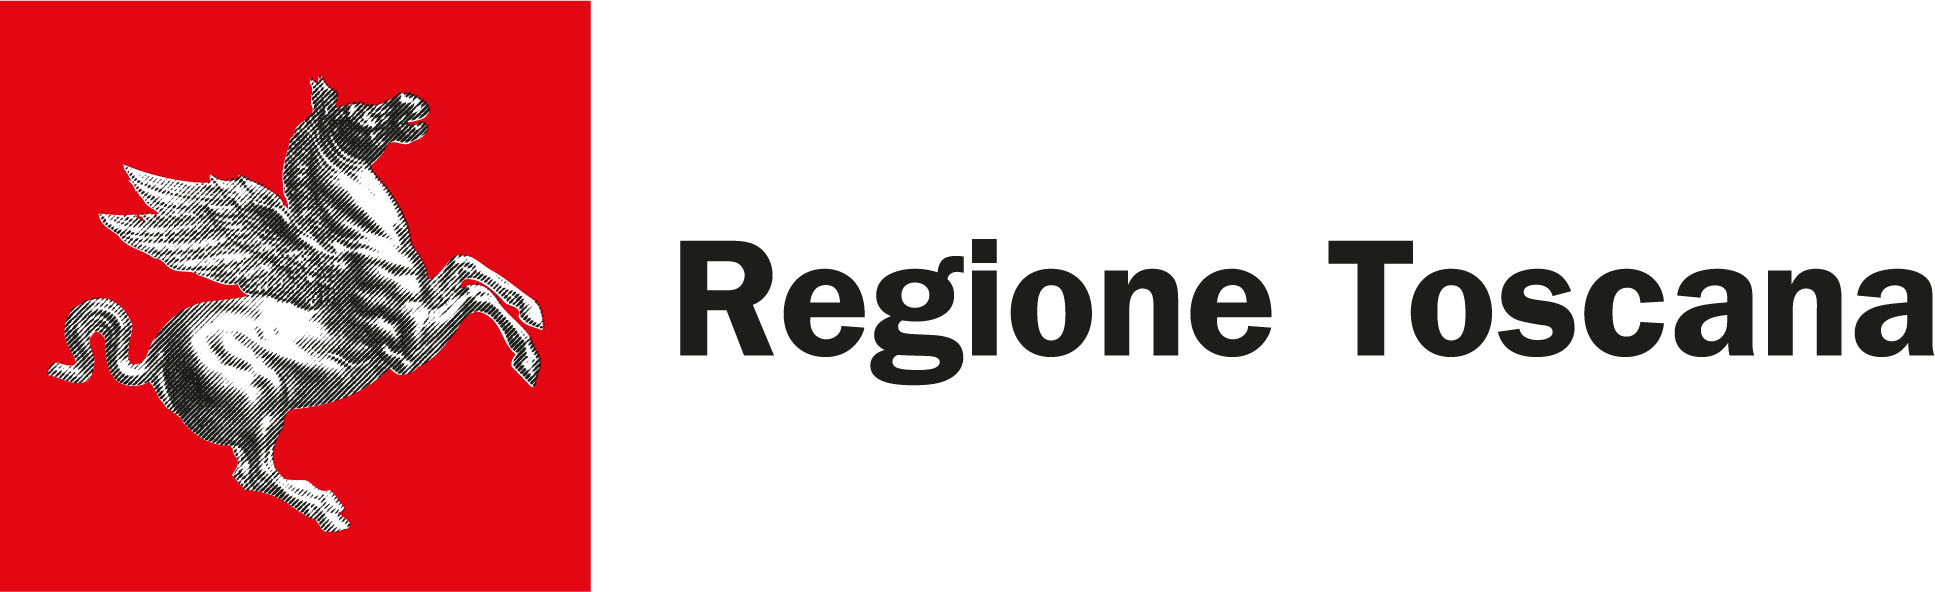 logo Regione Toscana